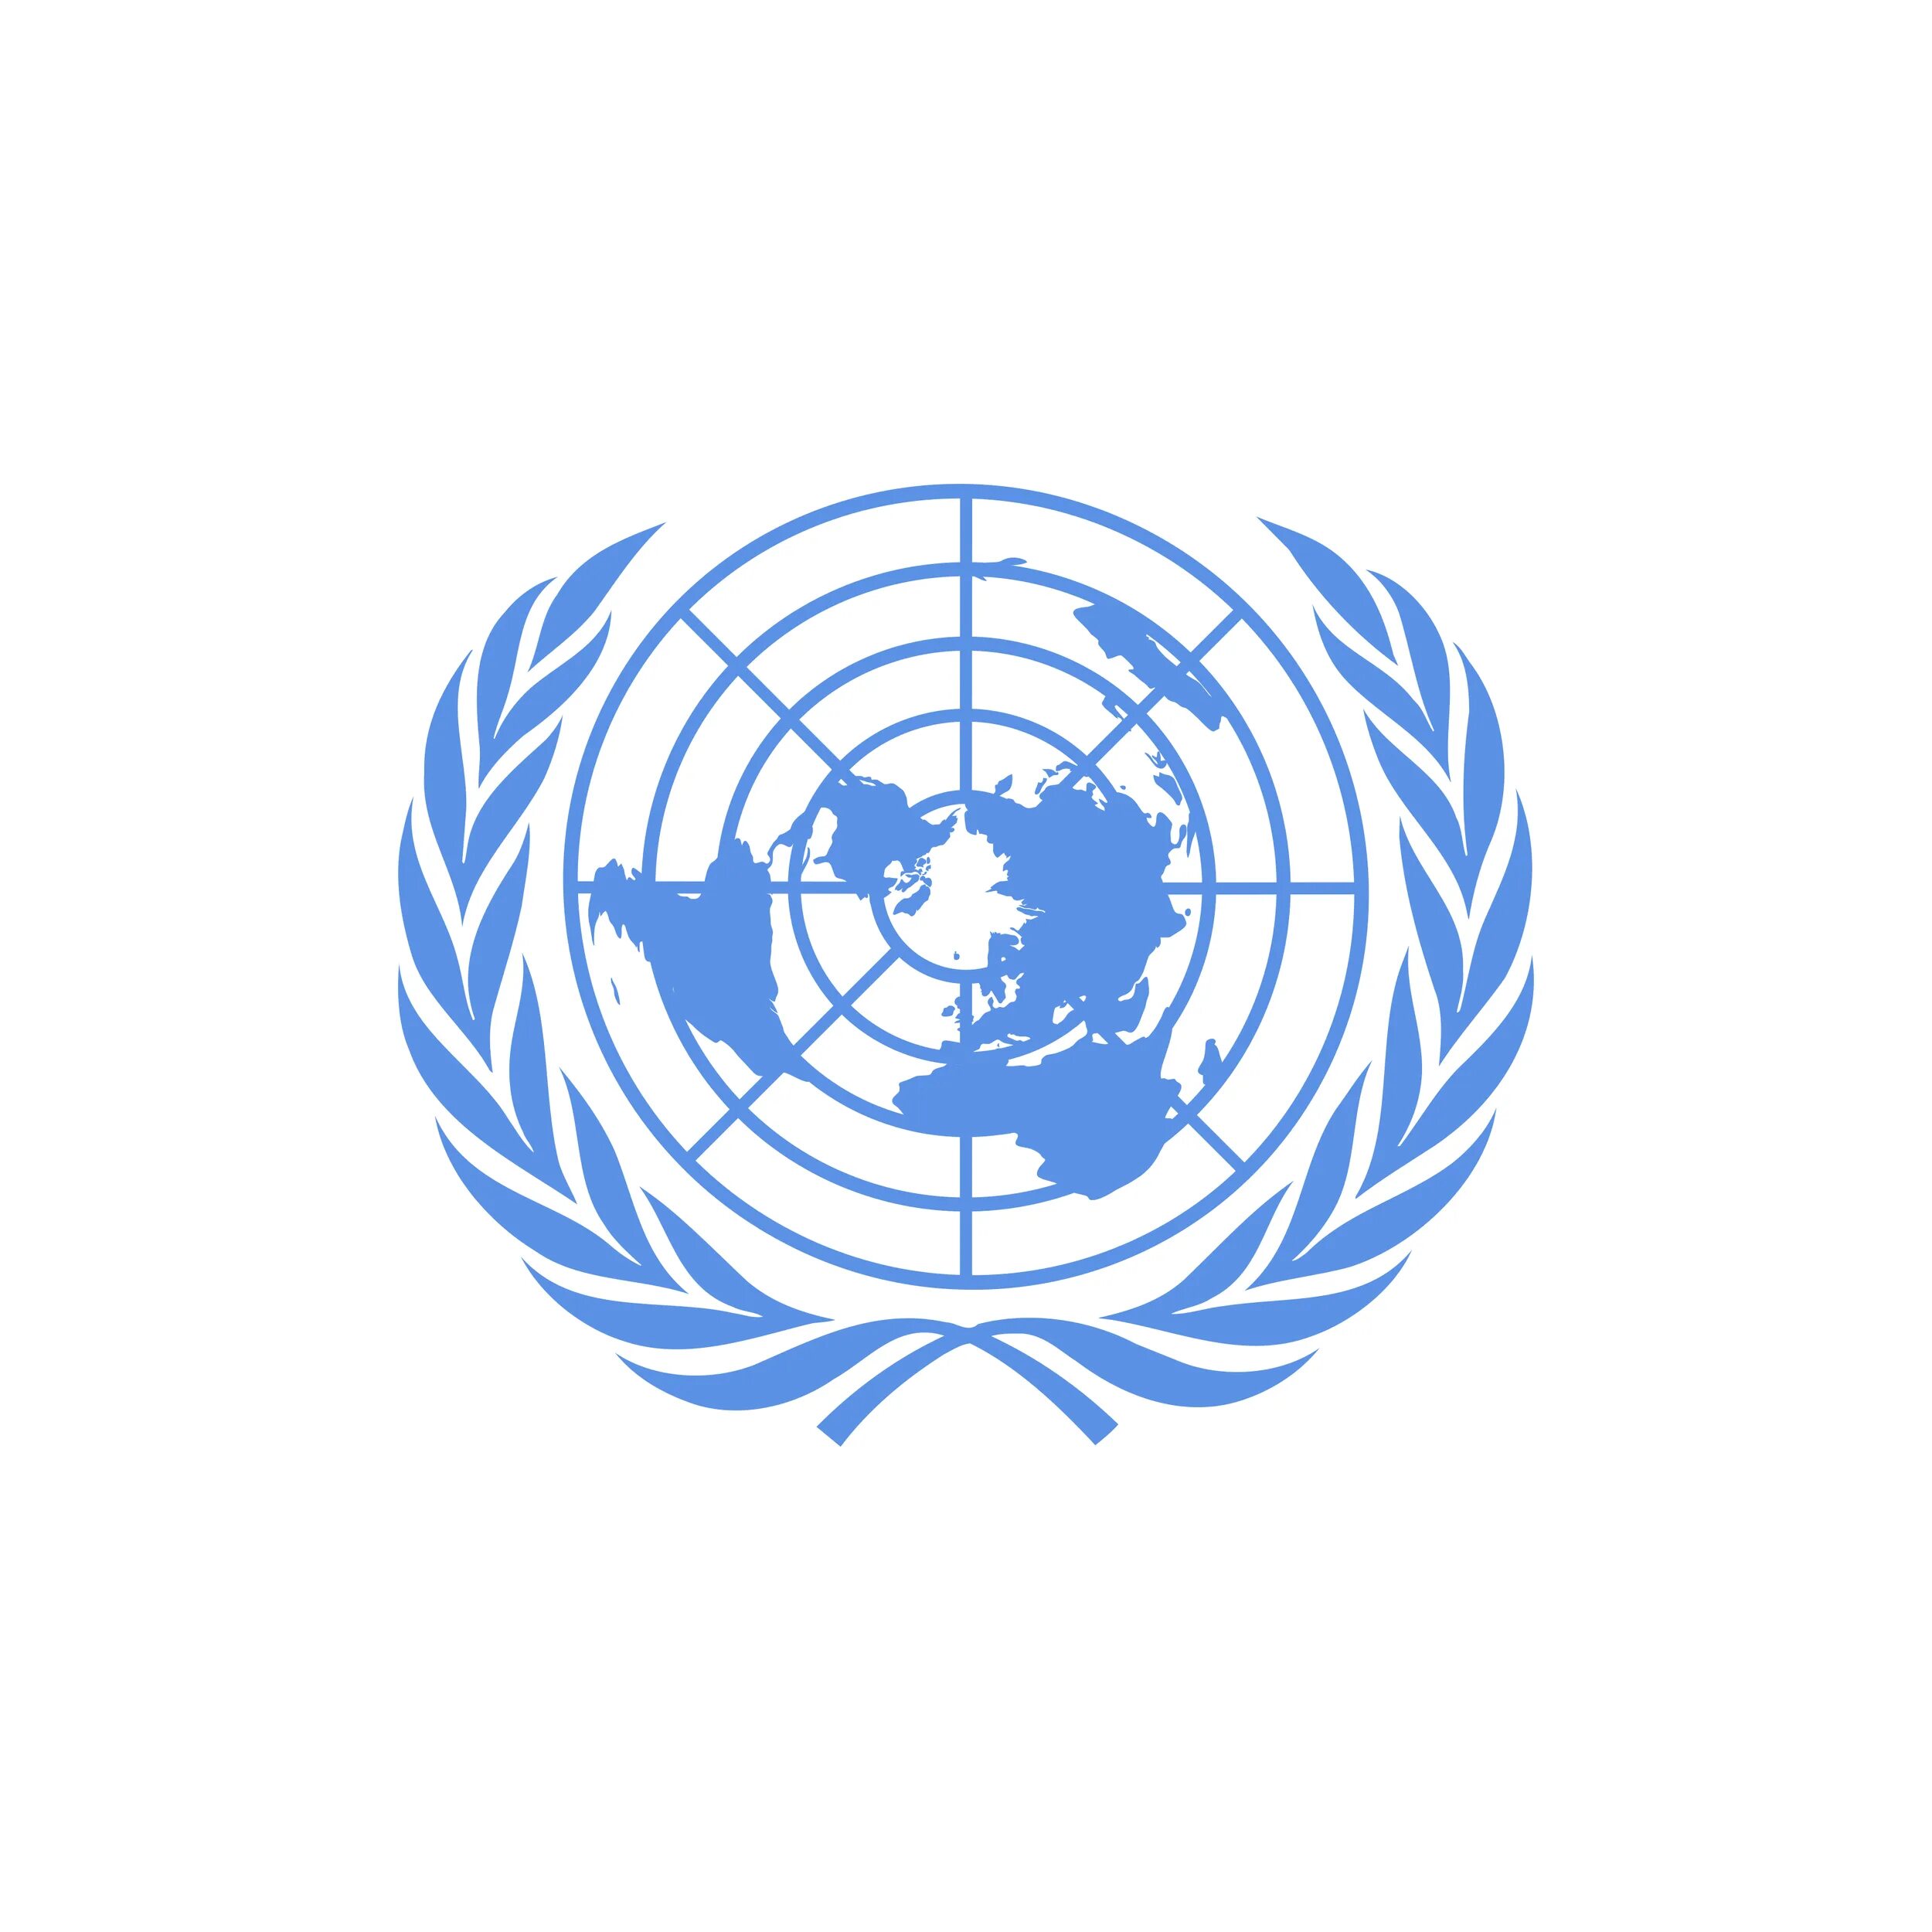 Конвенция о гражданских и политических правах. Лого организация Объединенных наций (ООН). Совет безопасности ООН эмблема организации. Флаг организации Объединенных наций. ЮНКТАД эмблема.